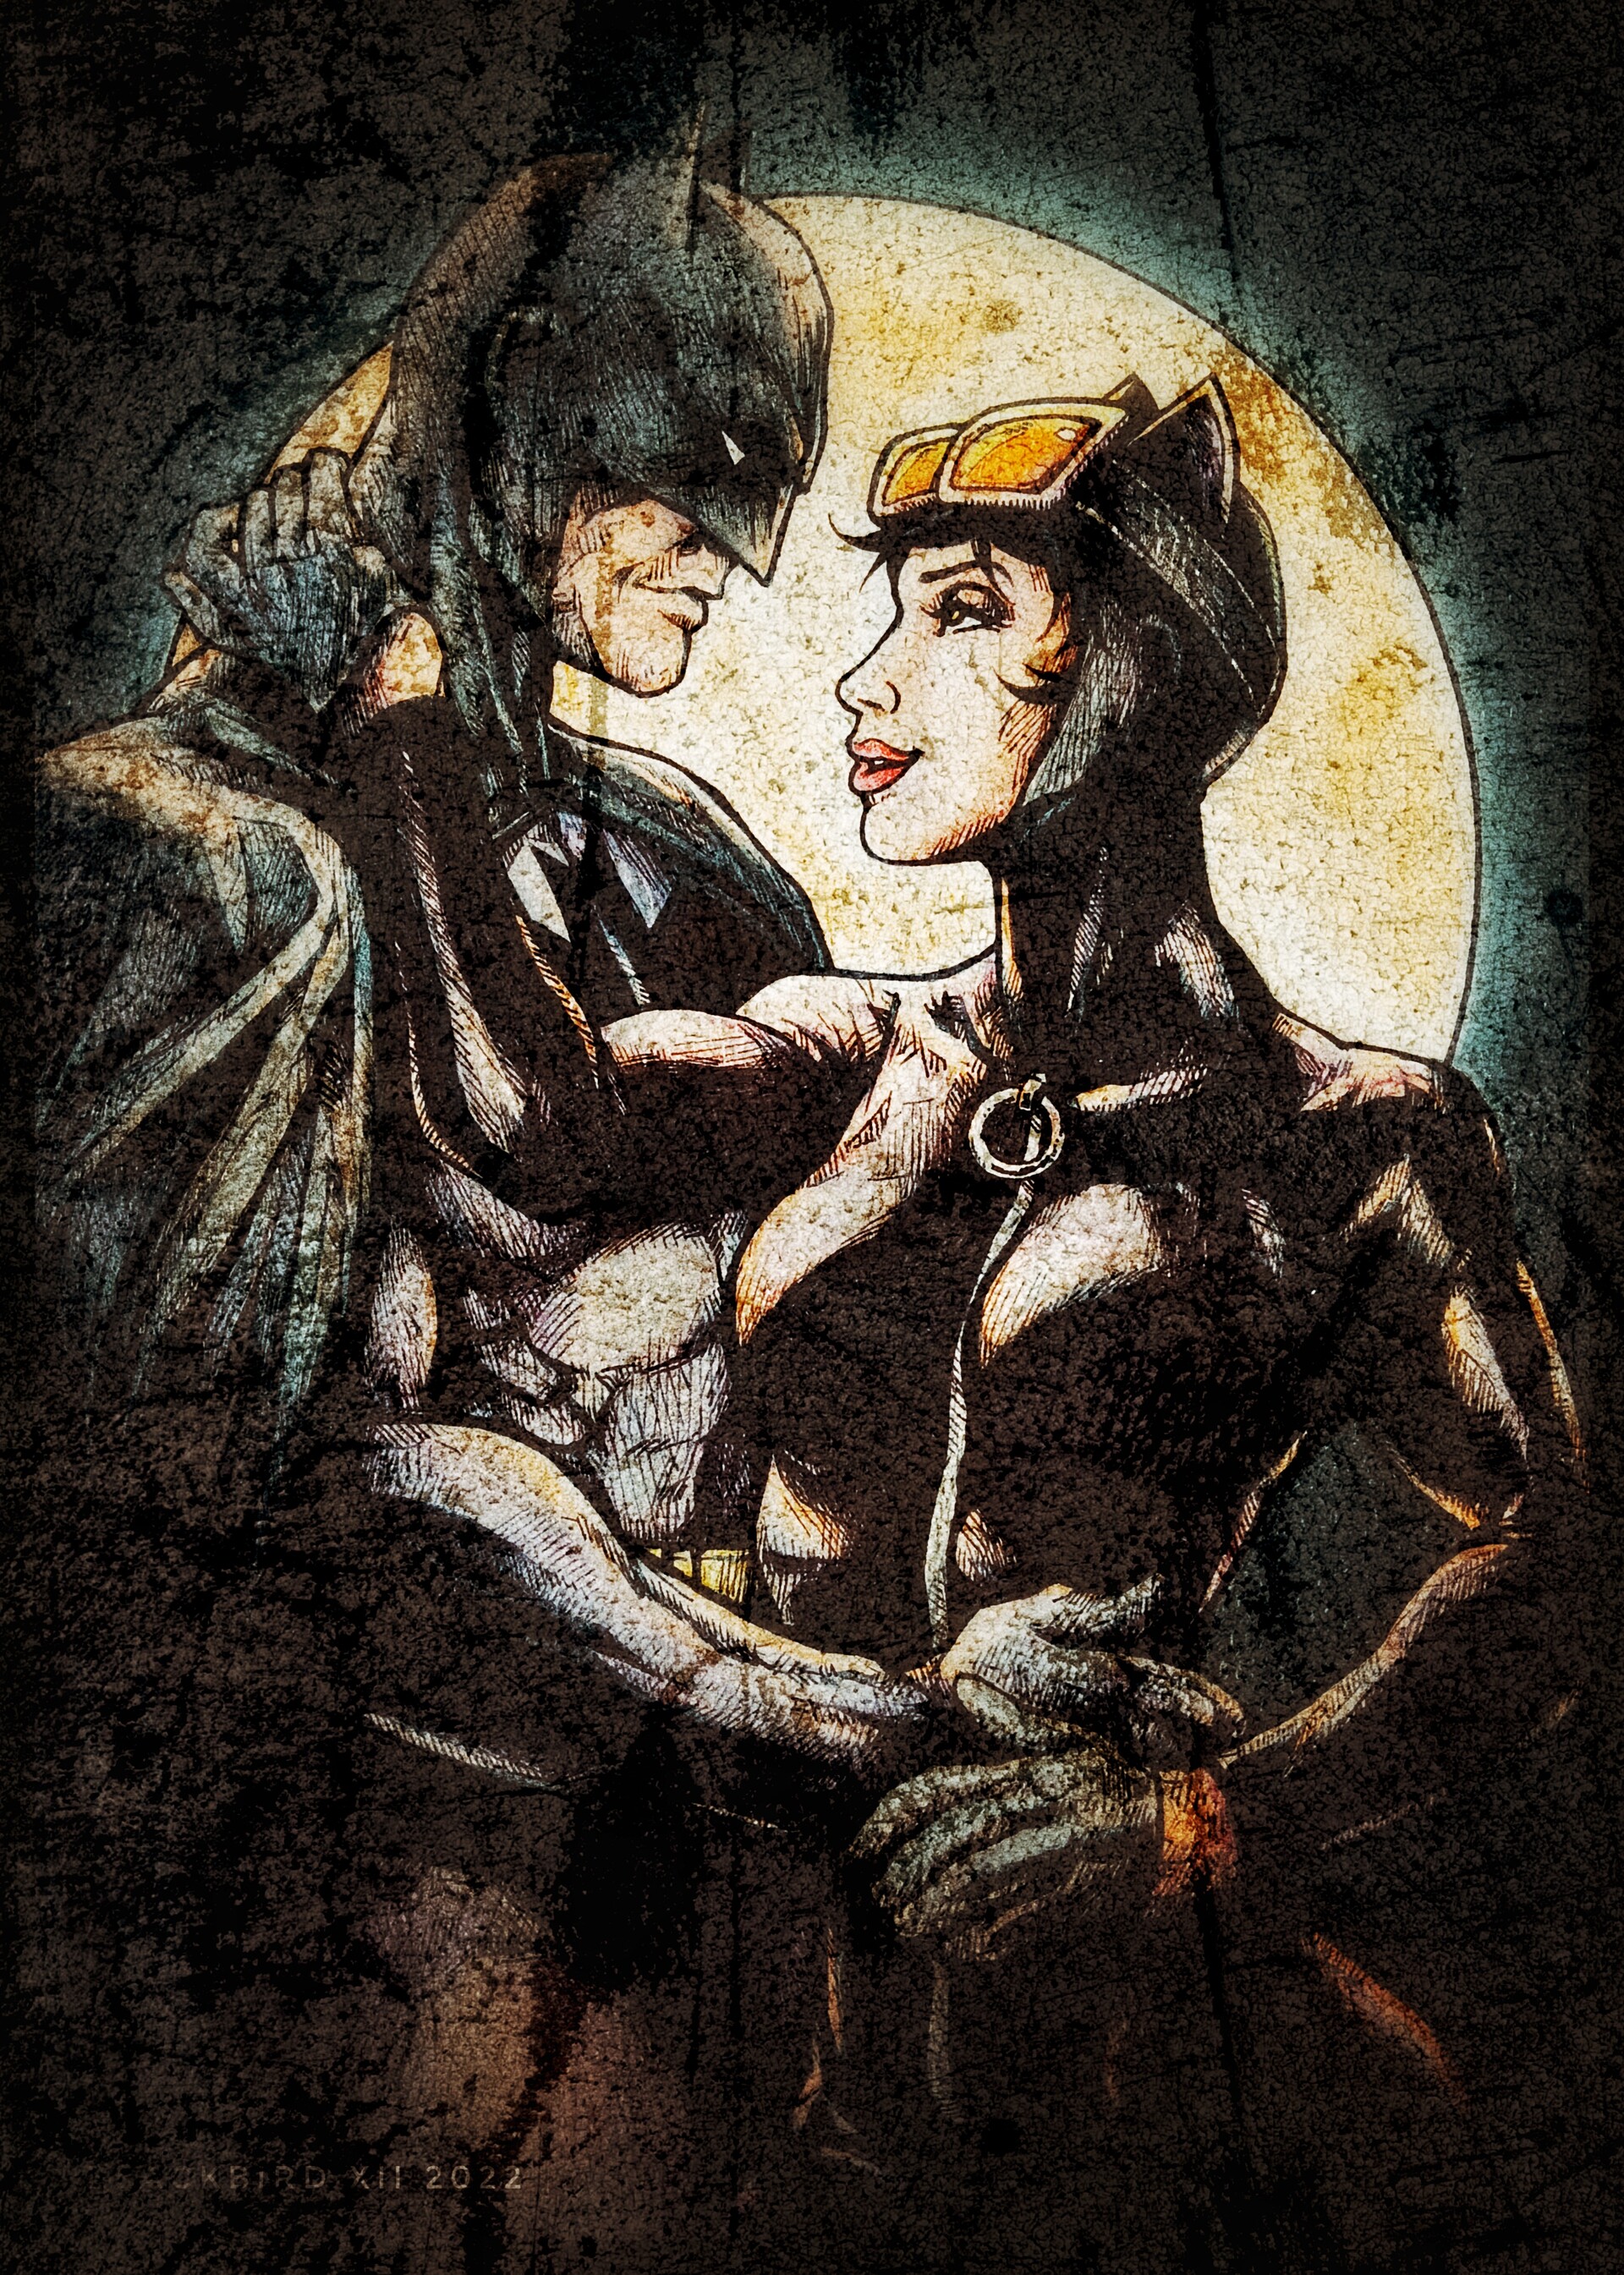 ArtStation - Fan art of Batman and Catwoman